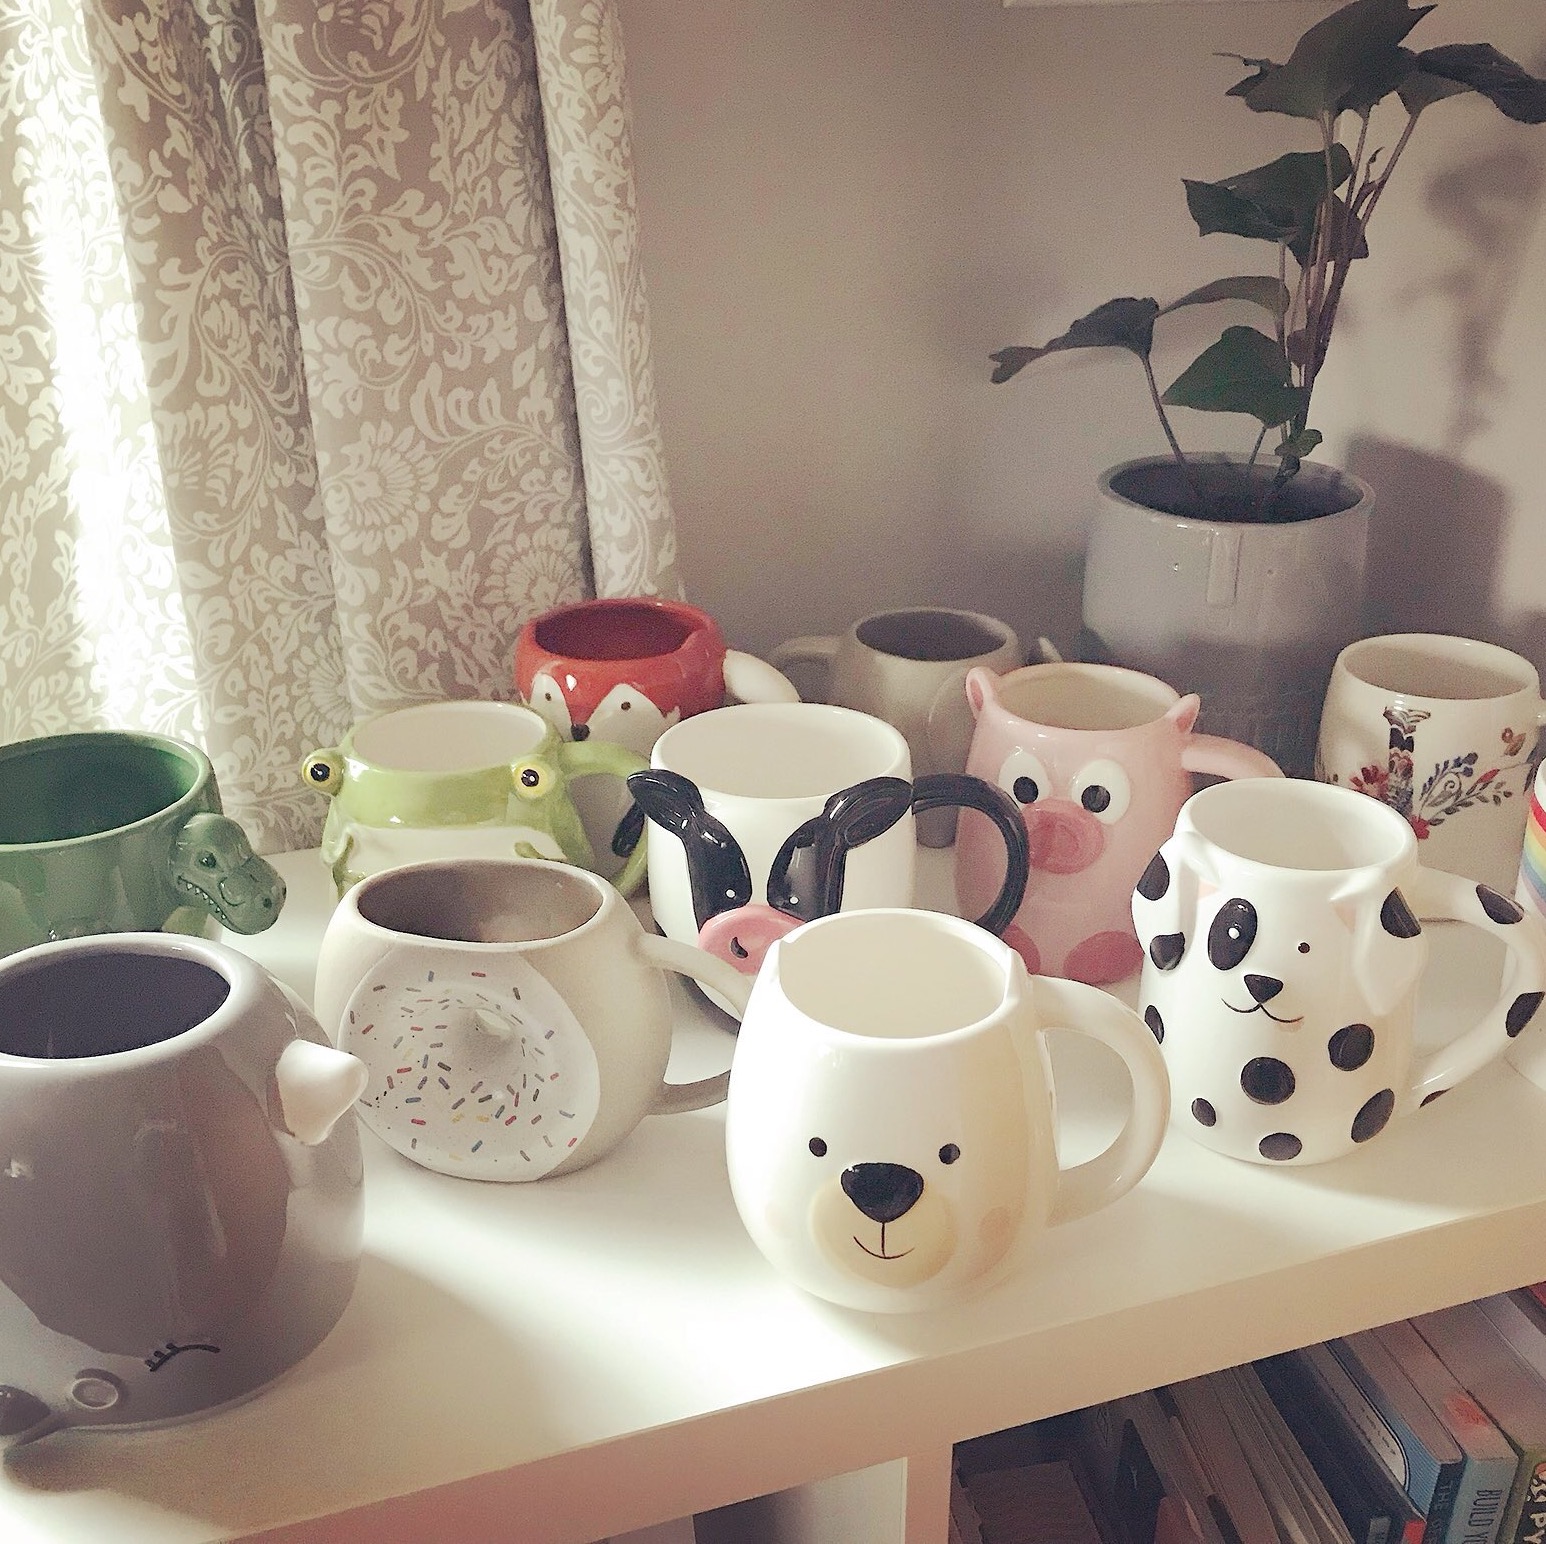 Photo of a large animal mug collection